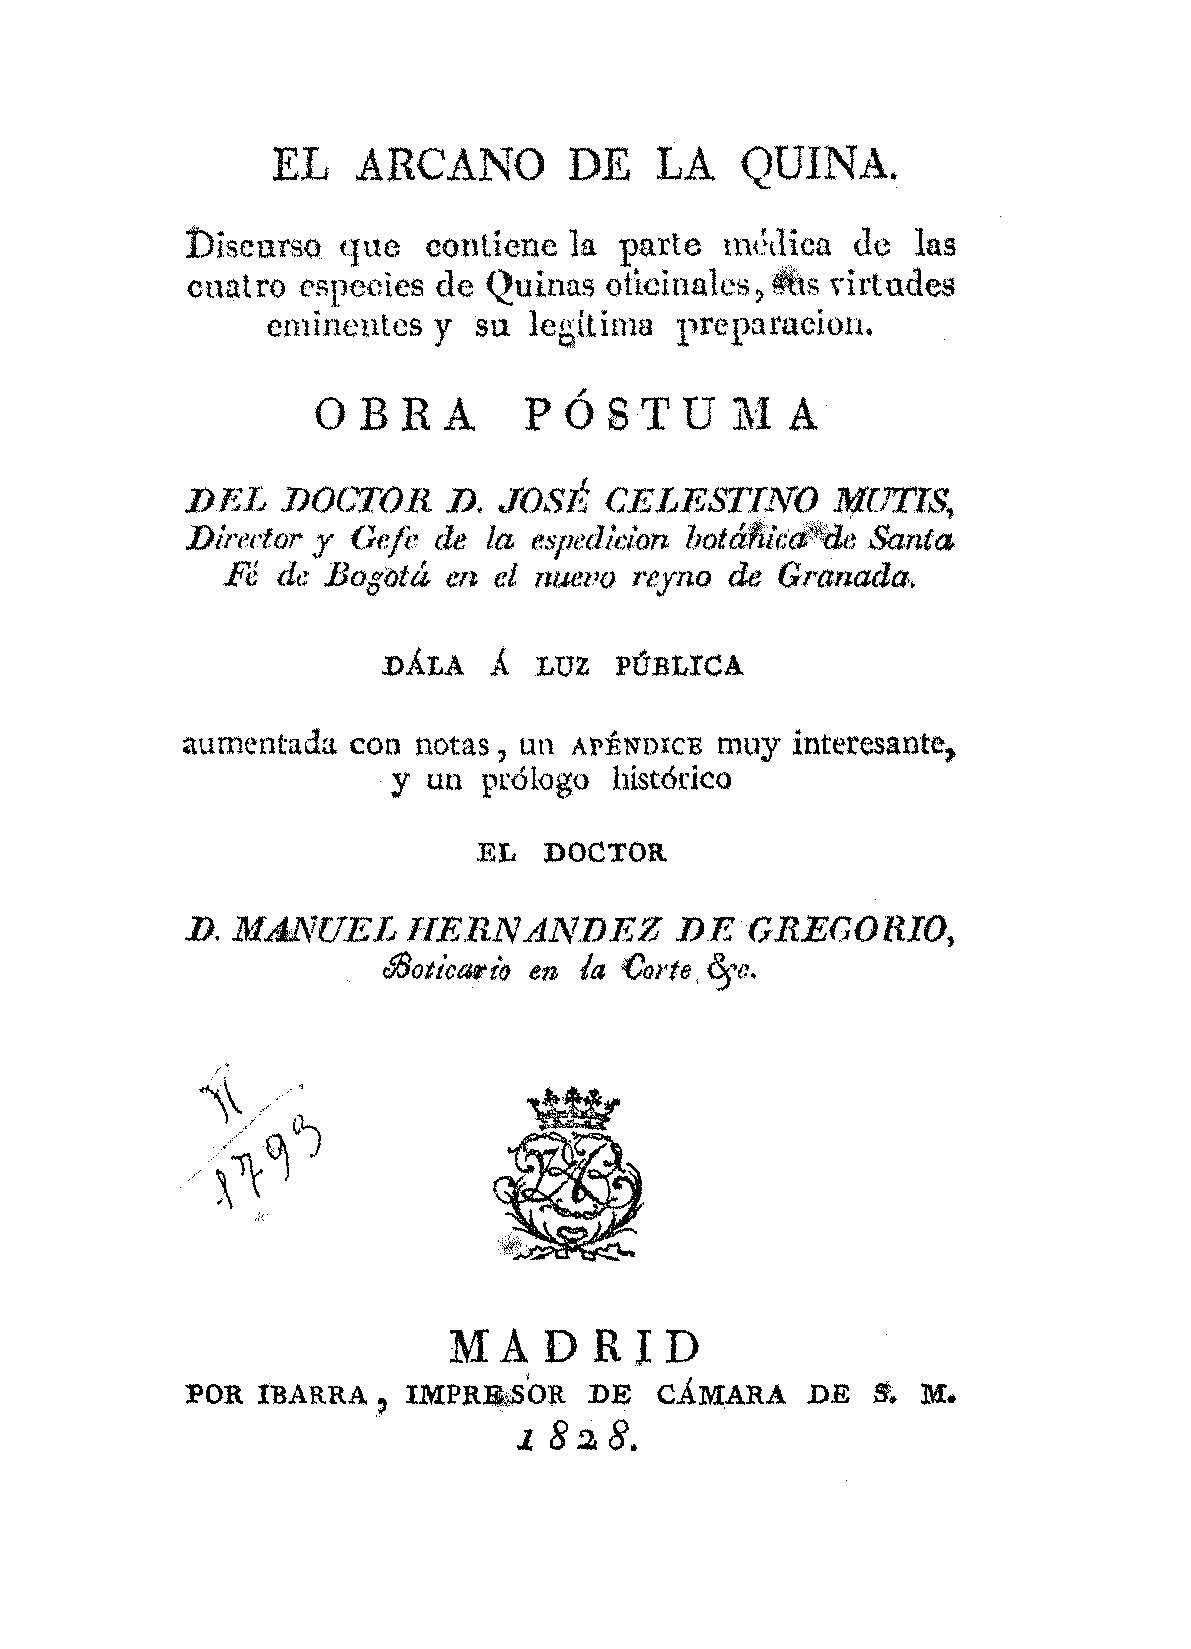 Mutis, José Celestino, 1732-1808